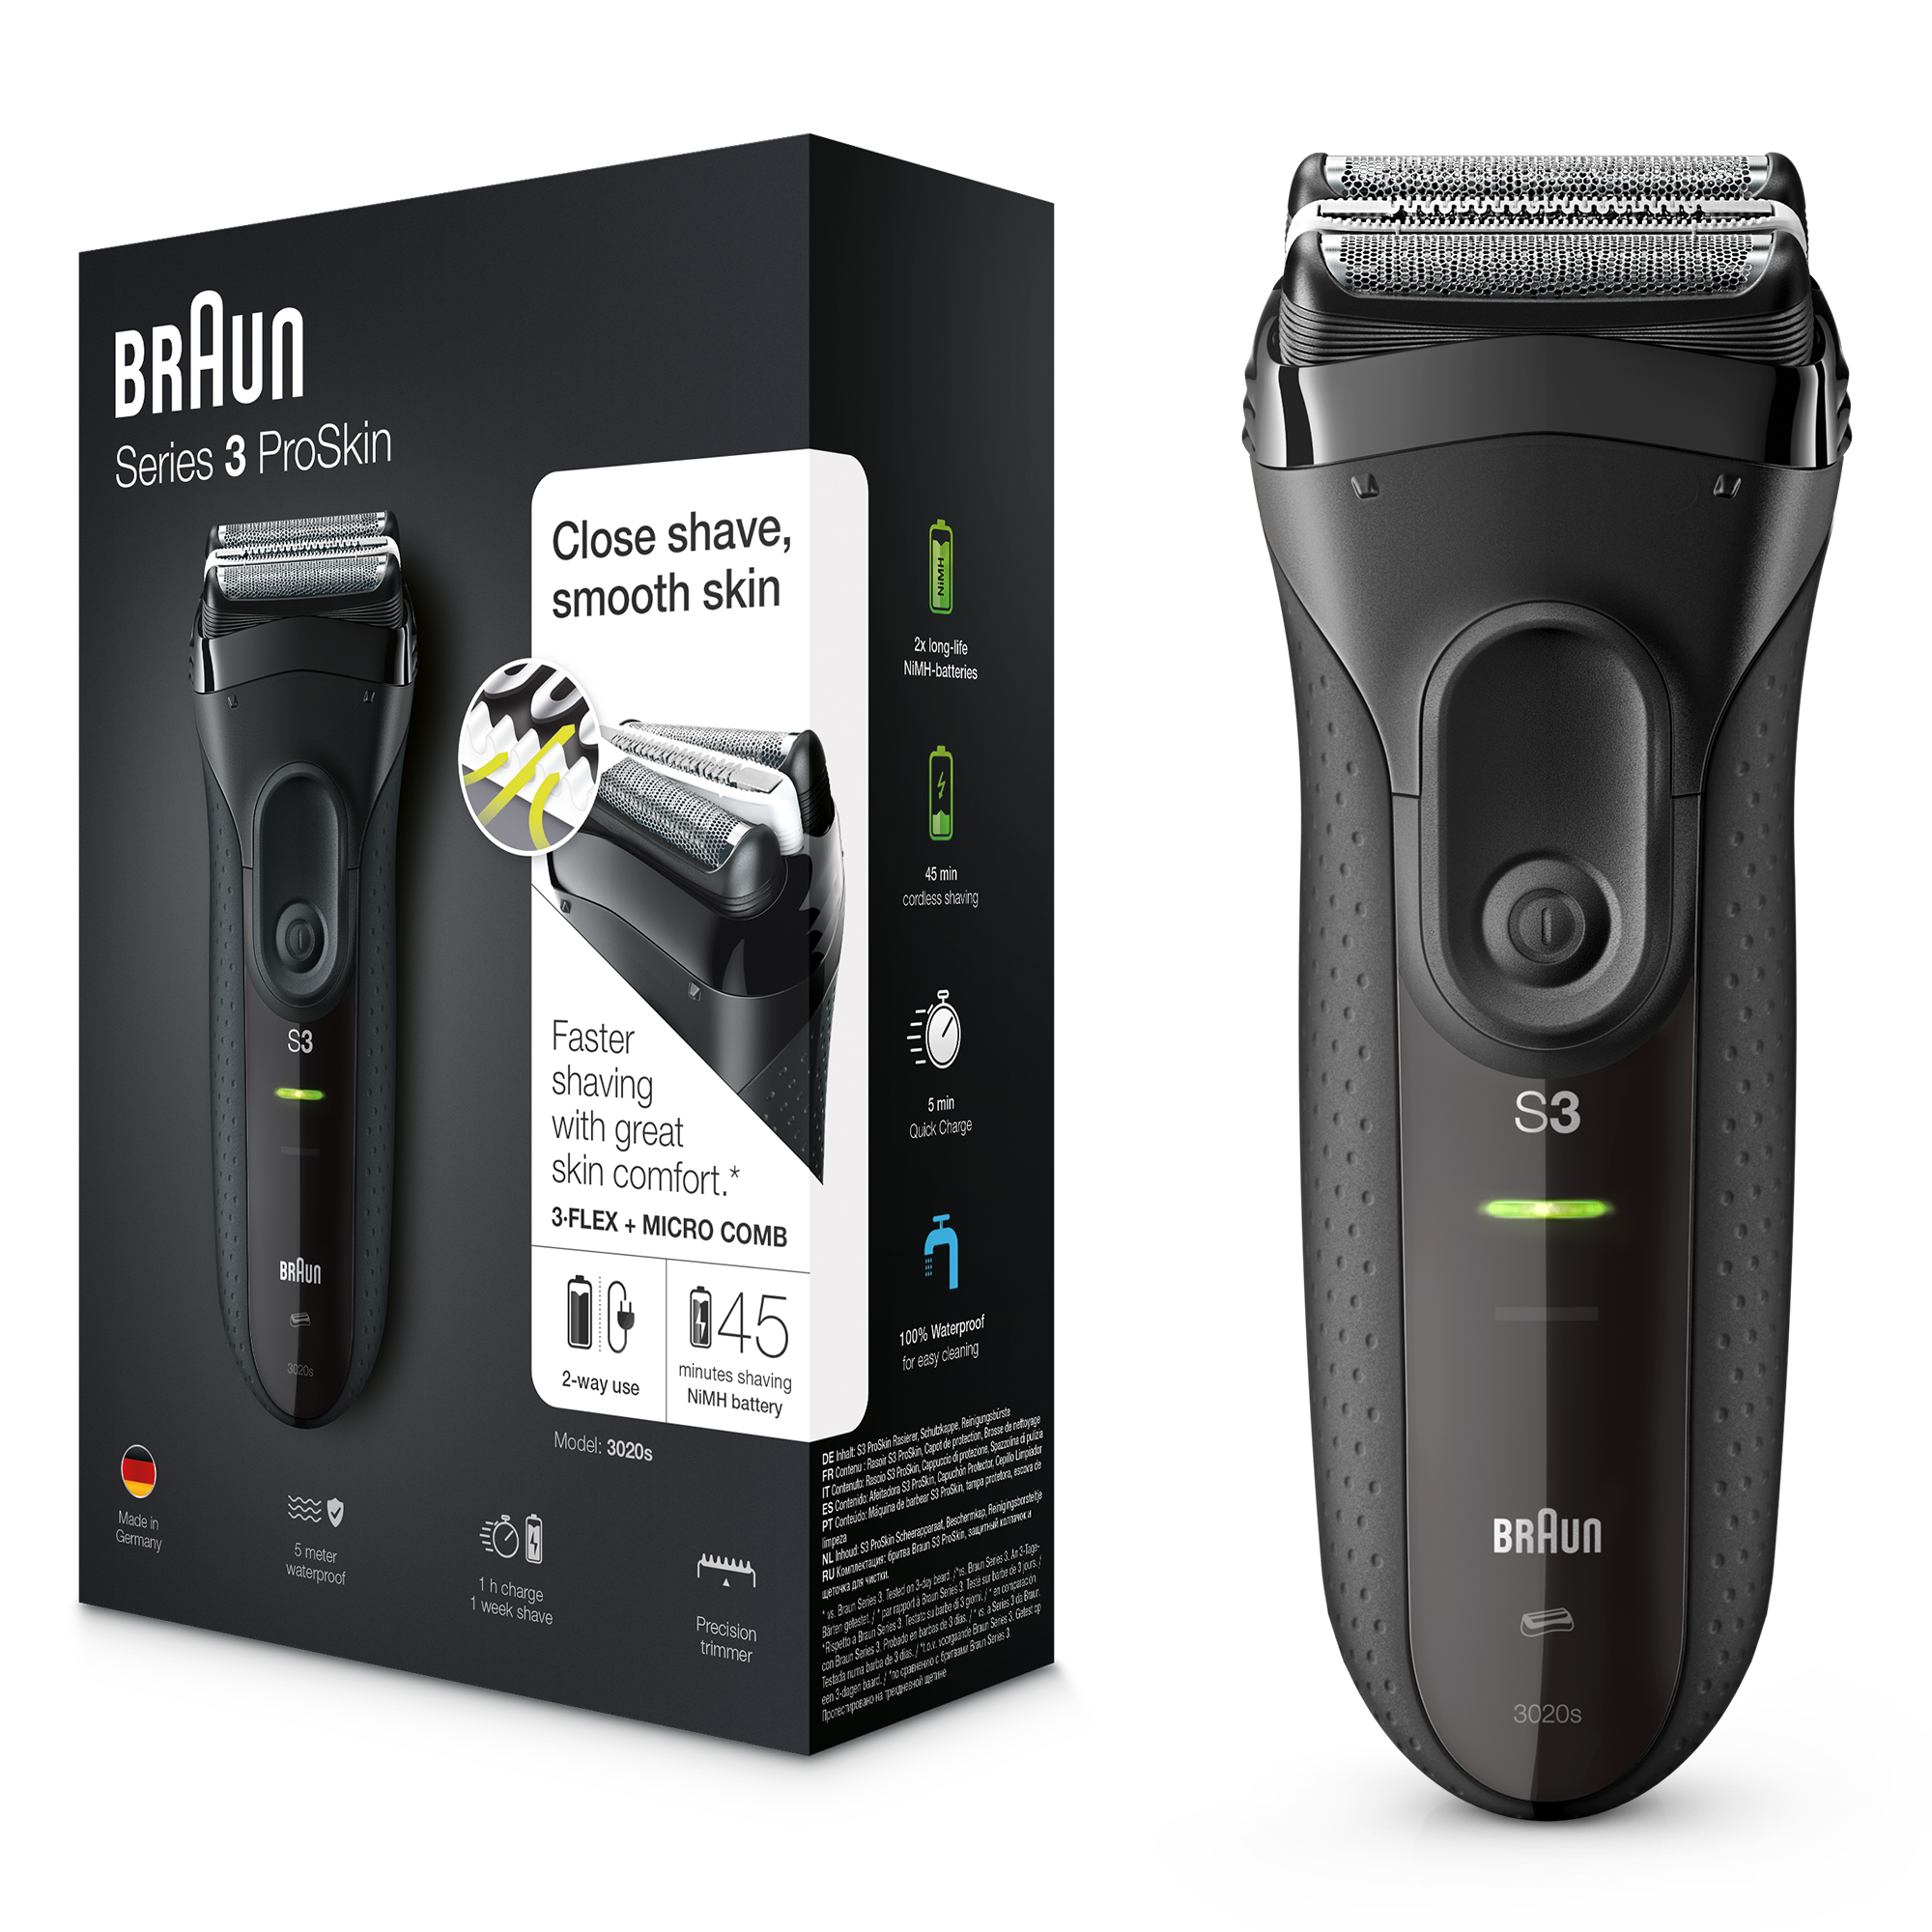 Máquina de Barbear Braun Series 3 300 - Novo Atalho - O caminho mais  económico para as suas compras em tecnologia.